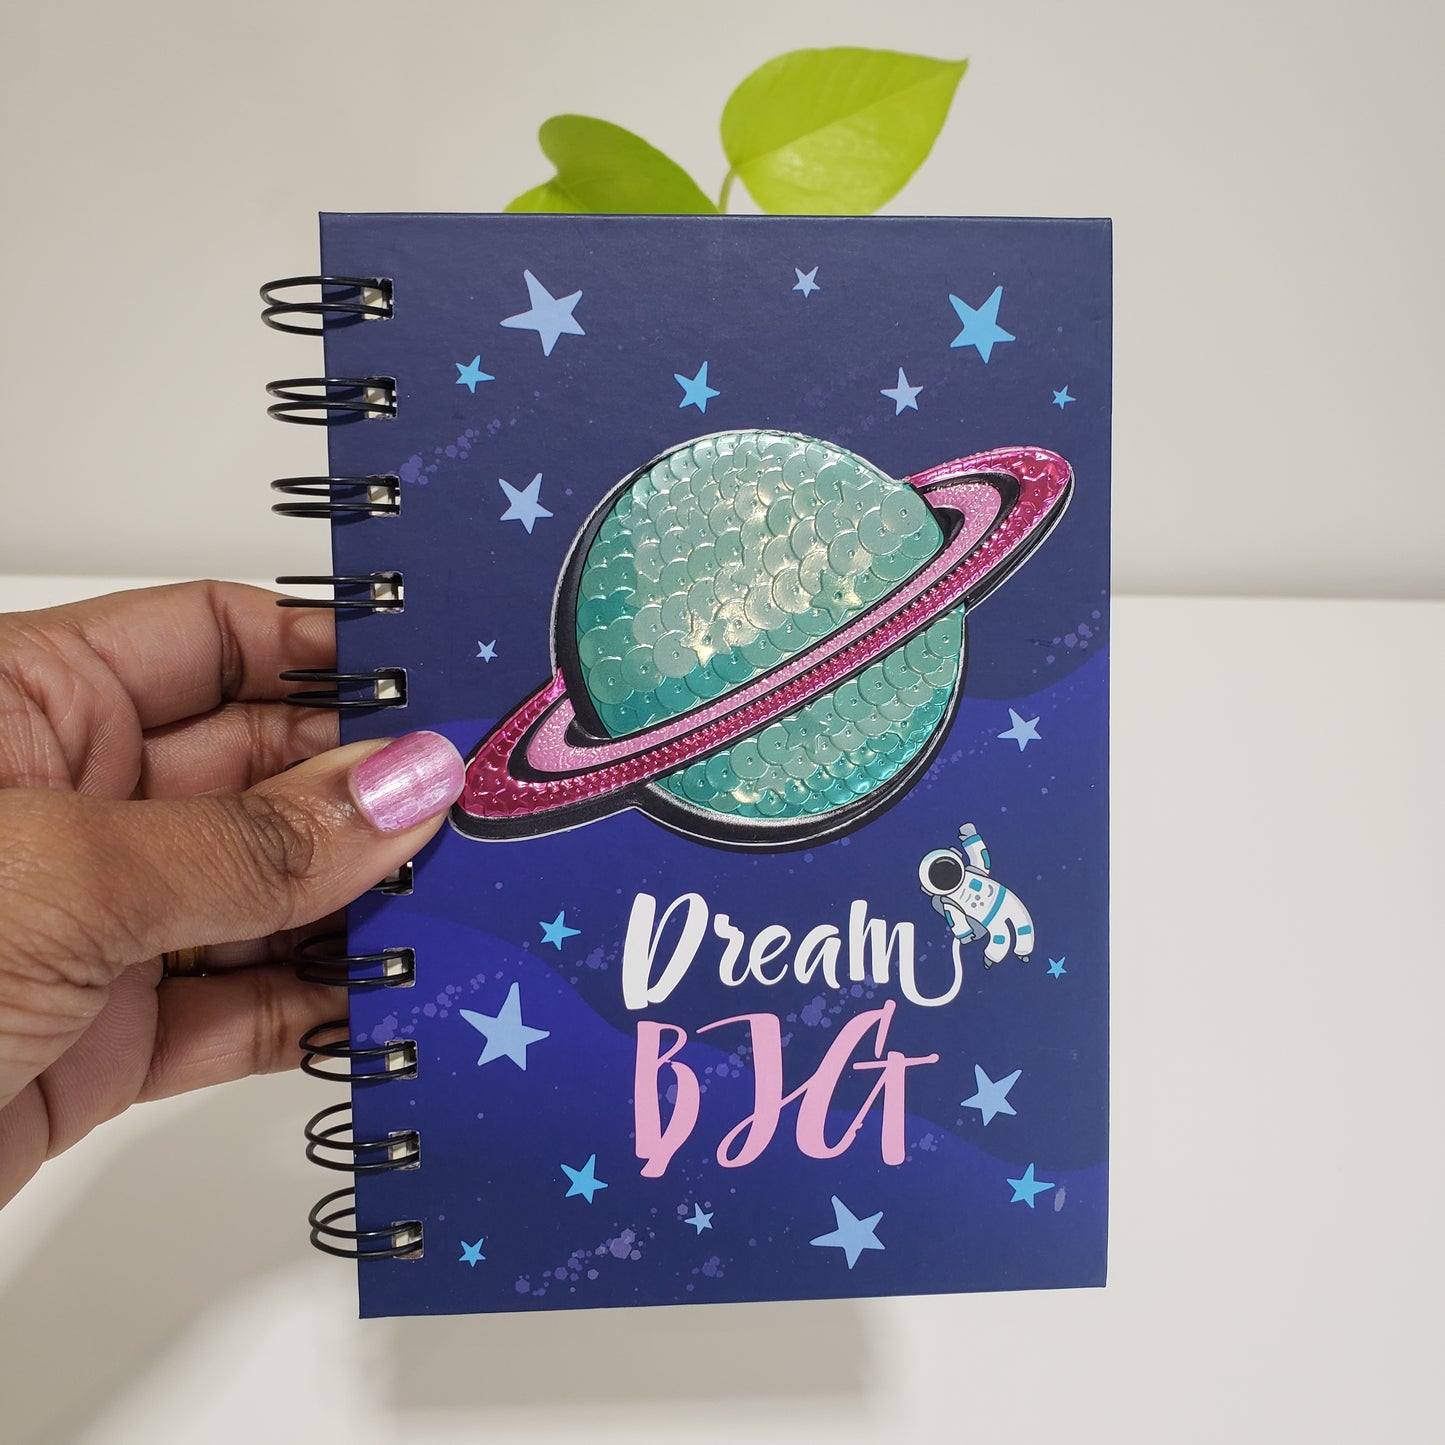 Dream big Saturn notebook